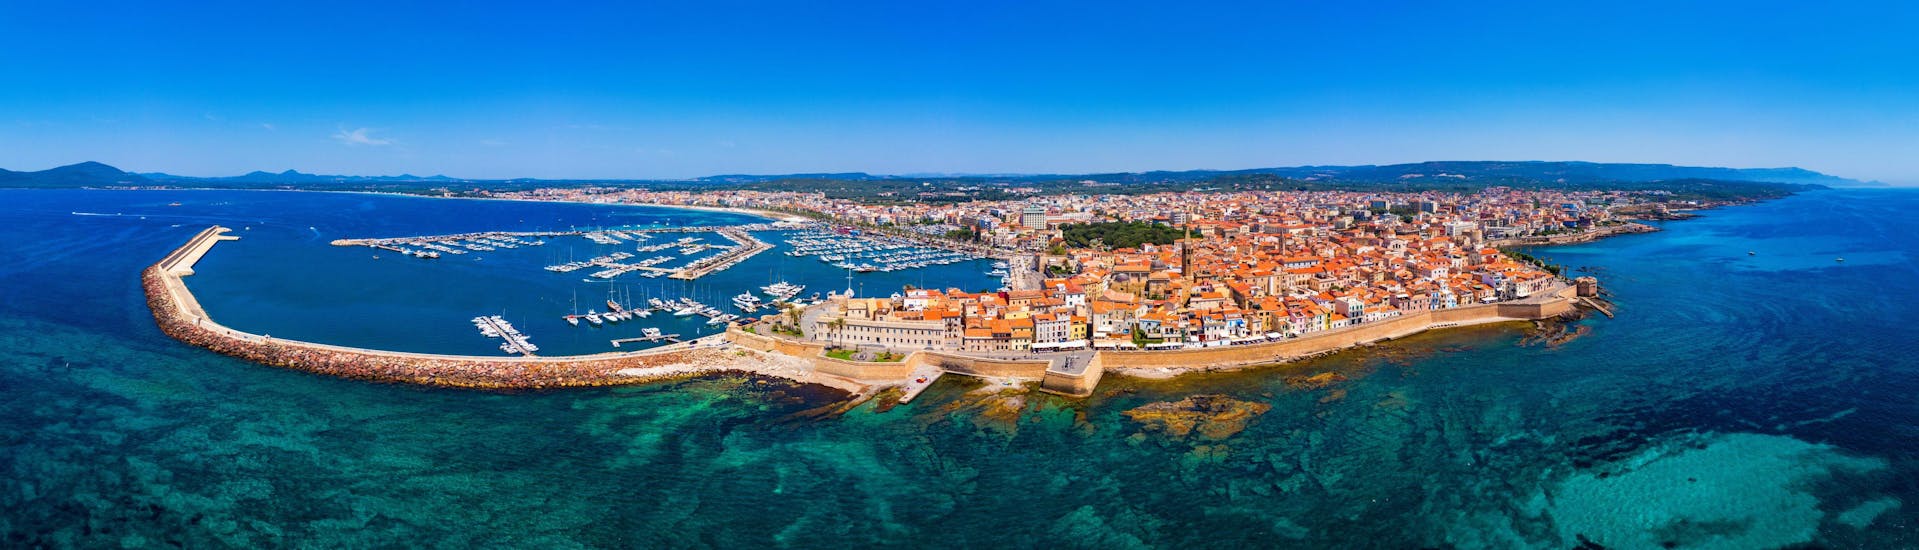 Blick auf die Stadt Alghero, ein beliebter Ort für Bootstouren auf Sardinien.